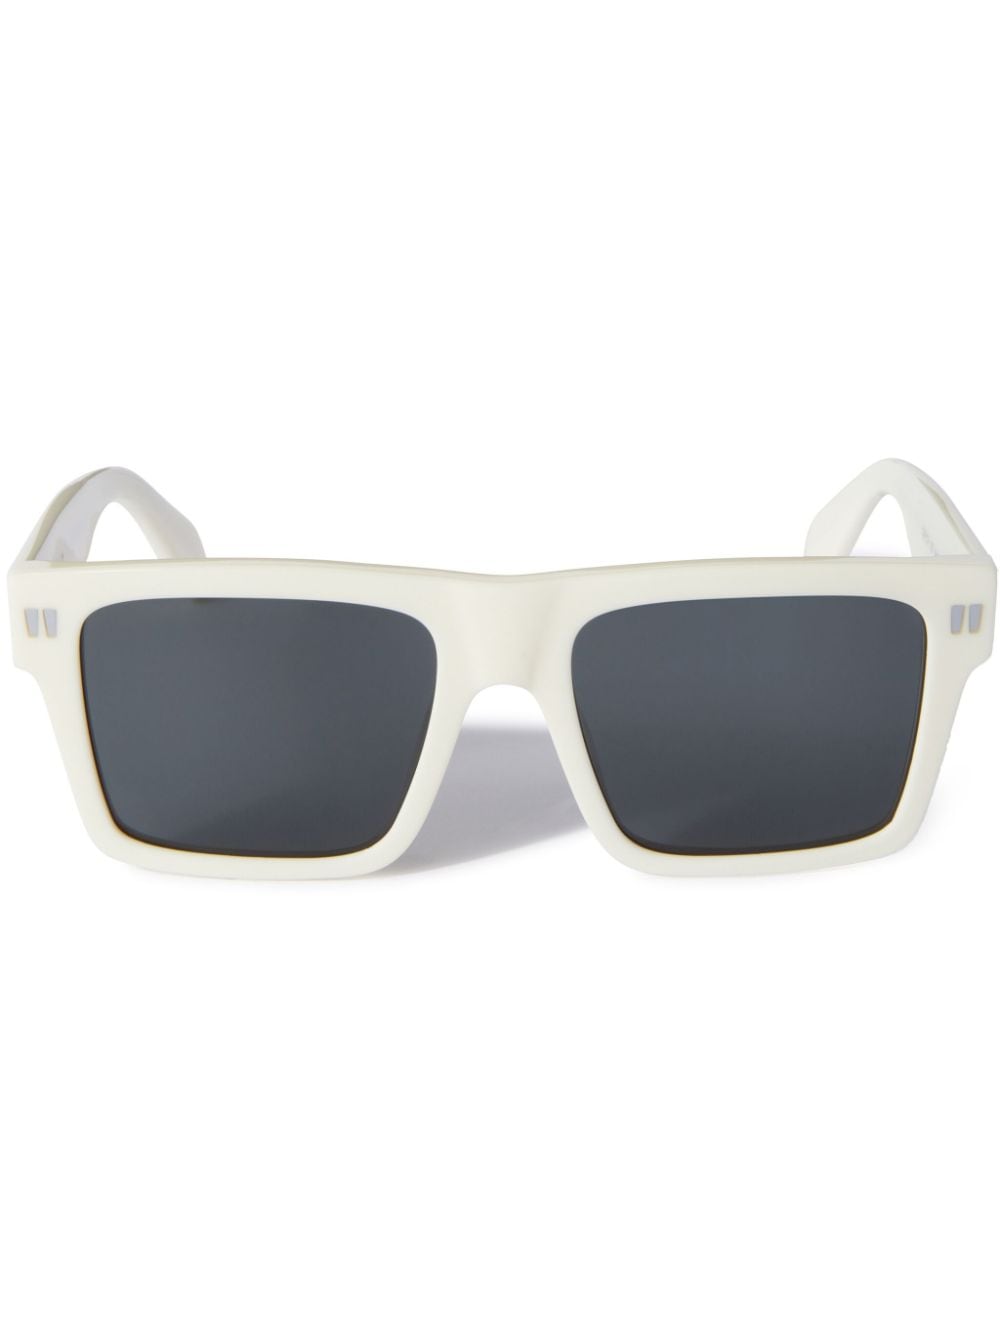 Off-White Lawton Sonnenbrille mit eckigem Gestell - Weiß von Off-White